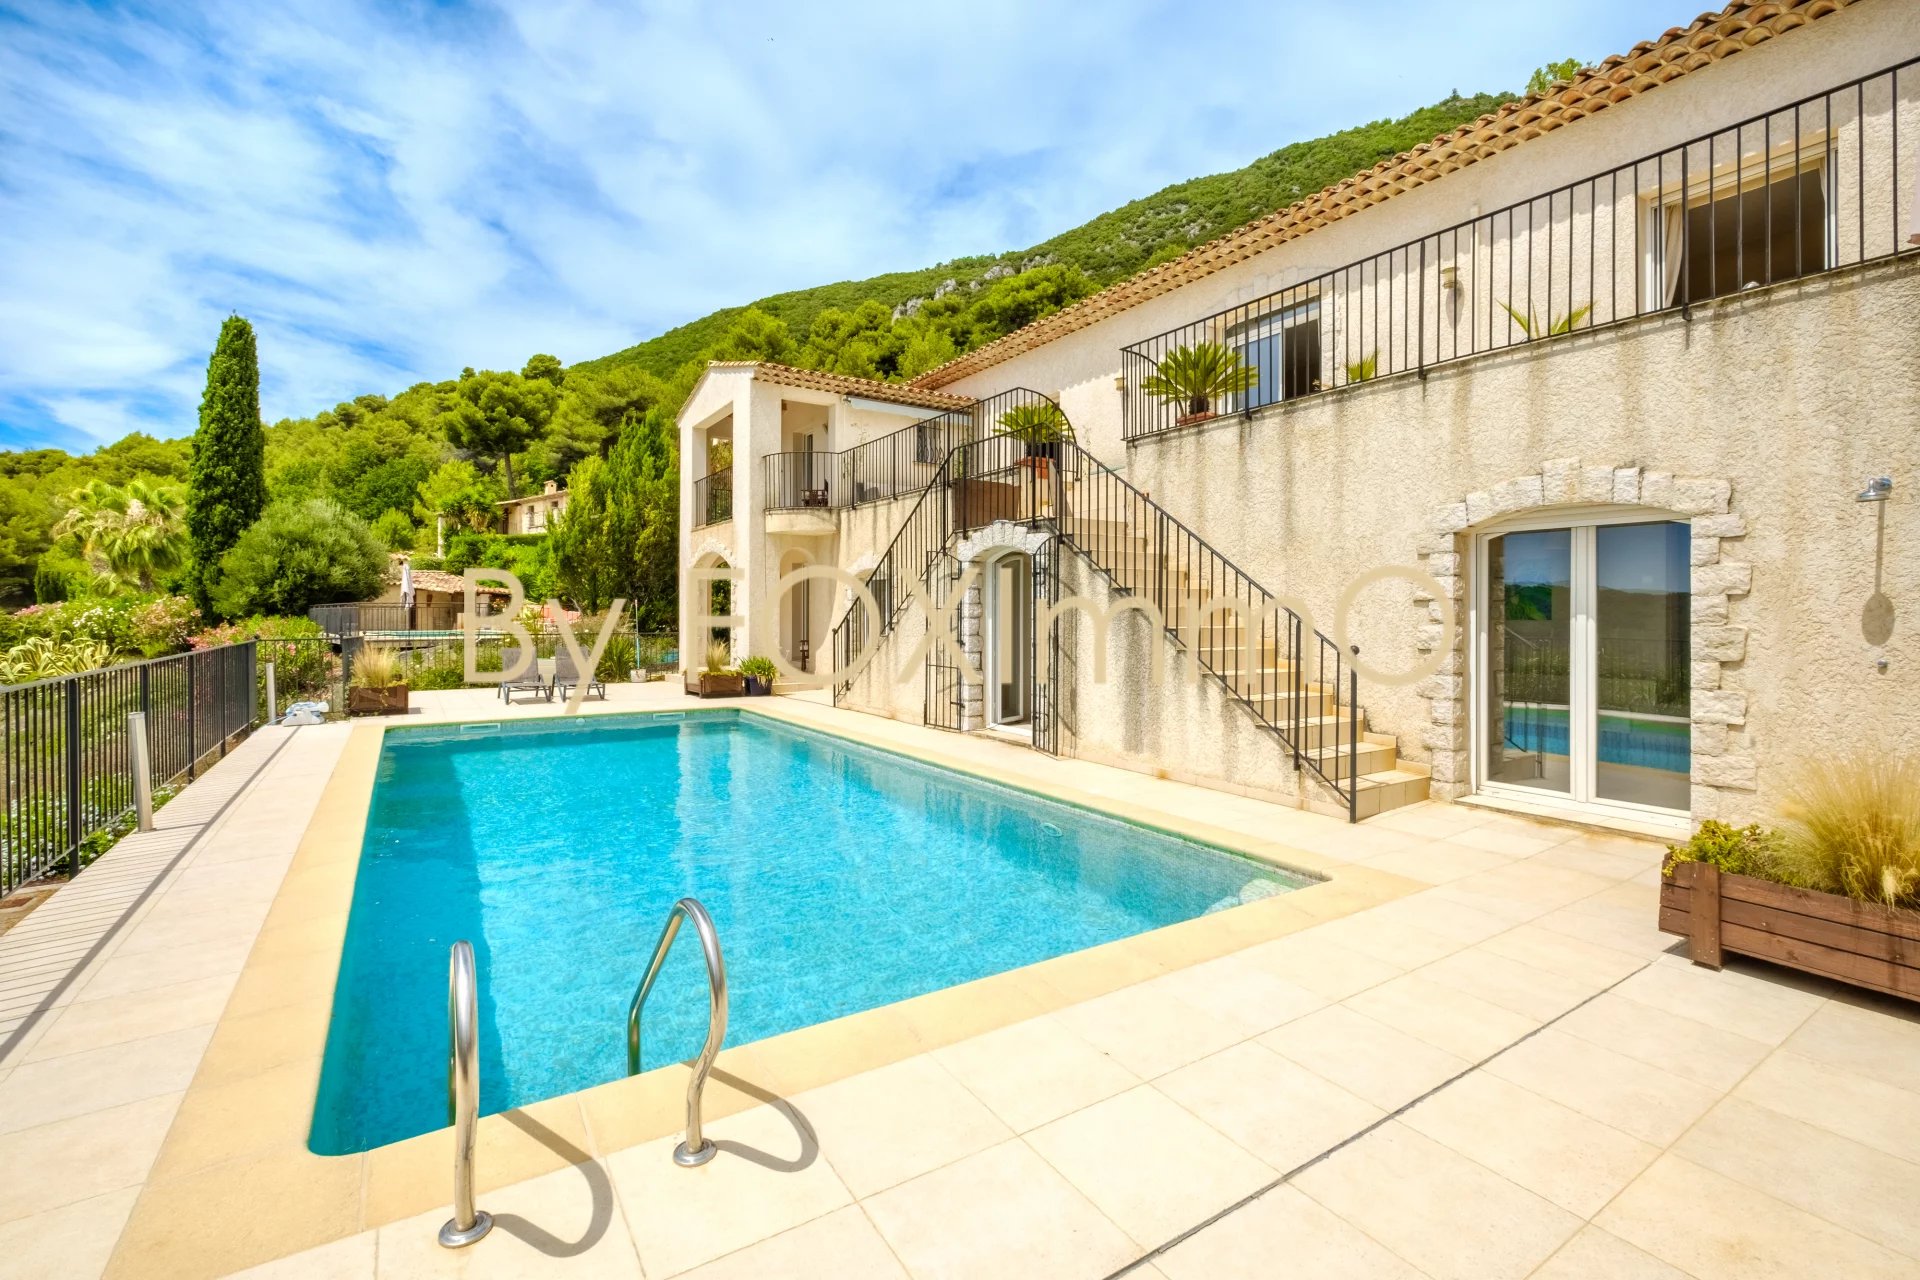 A vendre sur la côte d'Azur, Tourrettes, récente villa, Vue panoramique mer et montagne, calme, dominante,  piscine garage, grand terrain